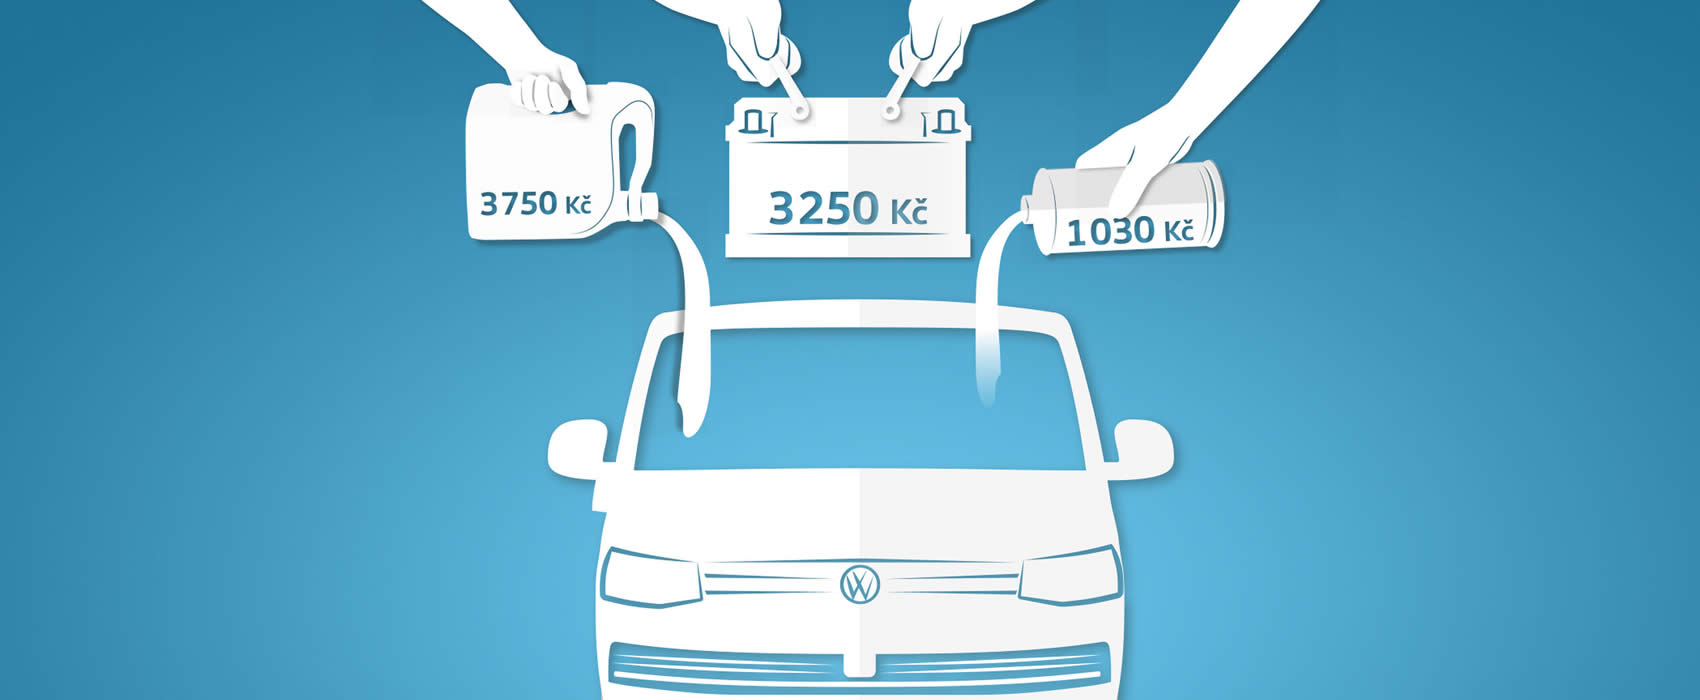 Volkswagen Užitkové vozy výhodná nabídka